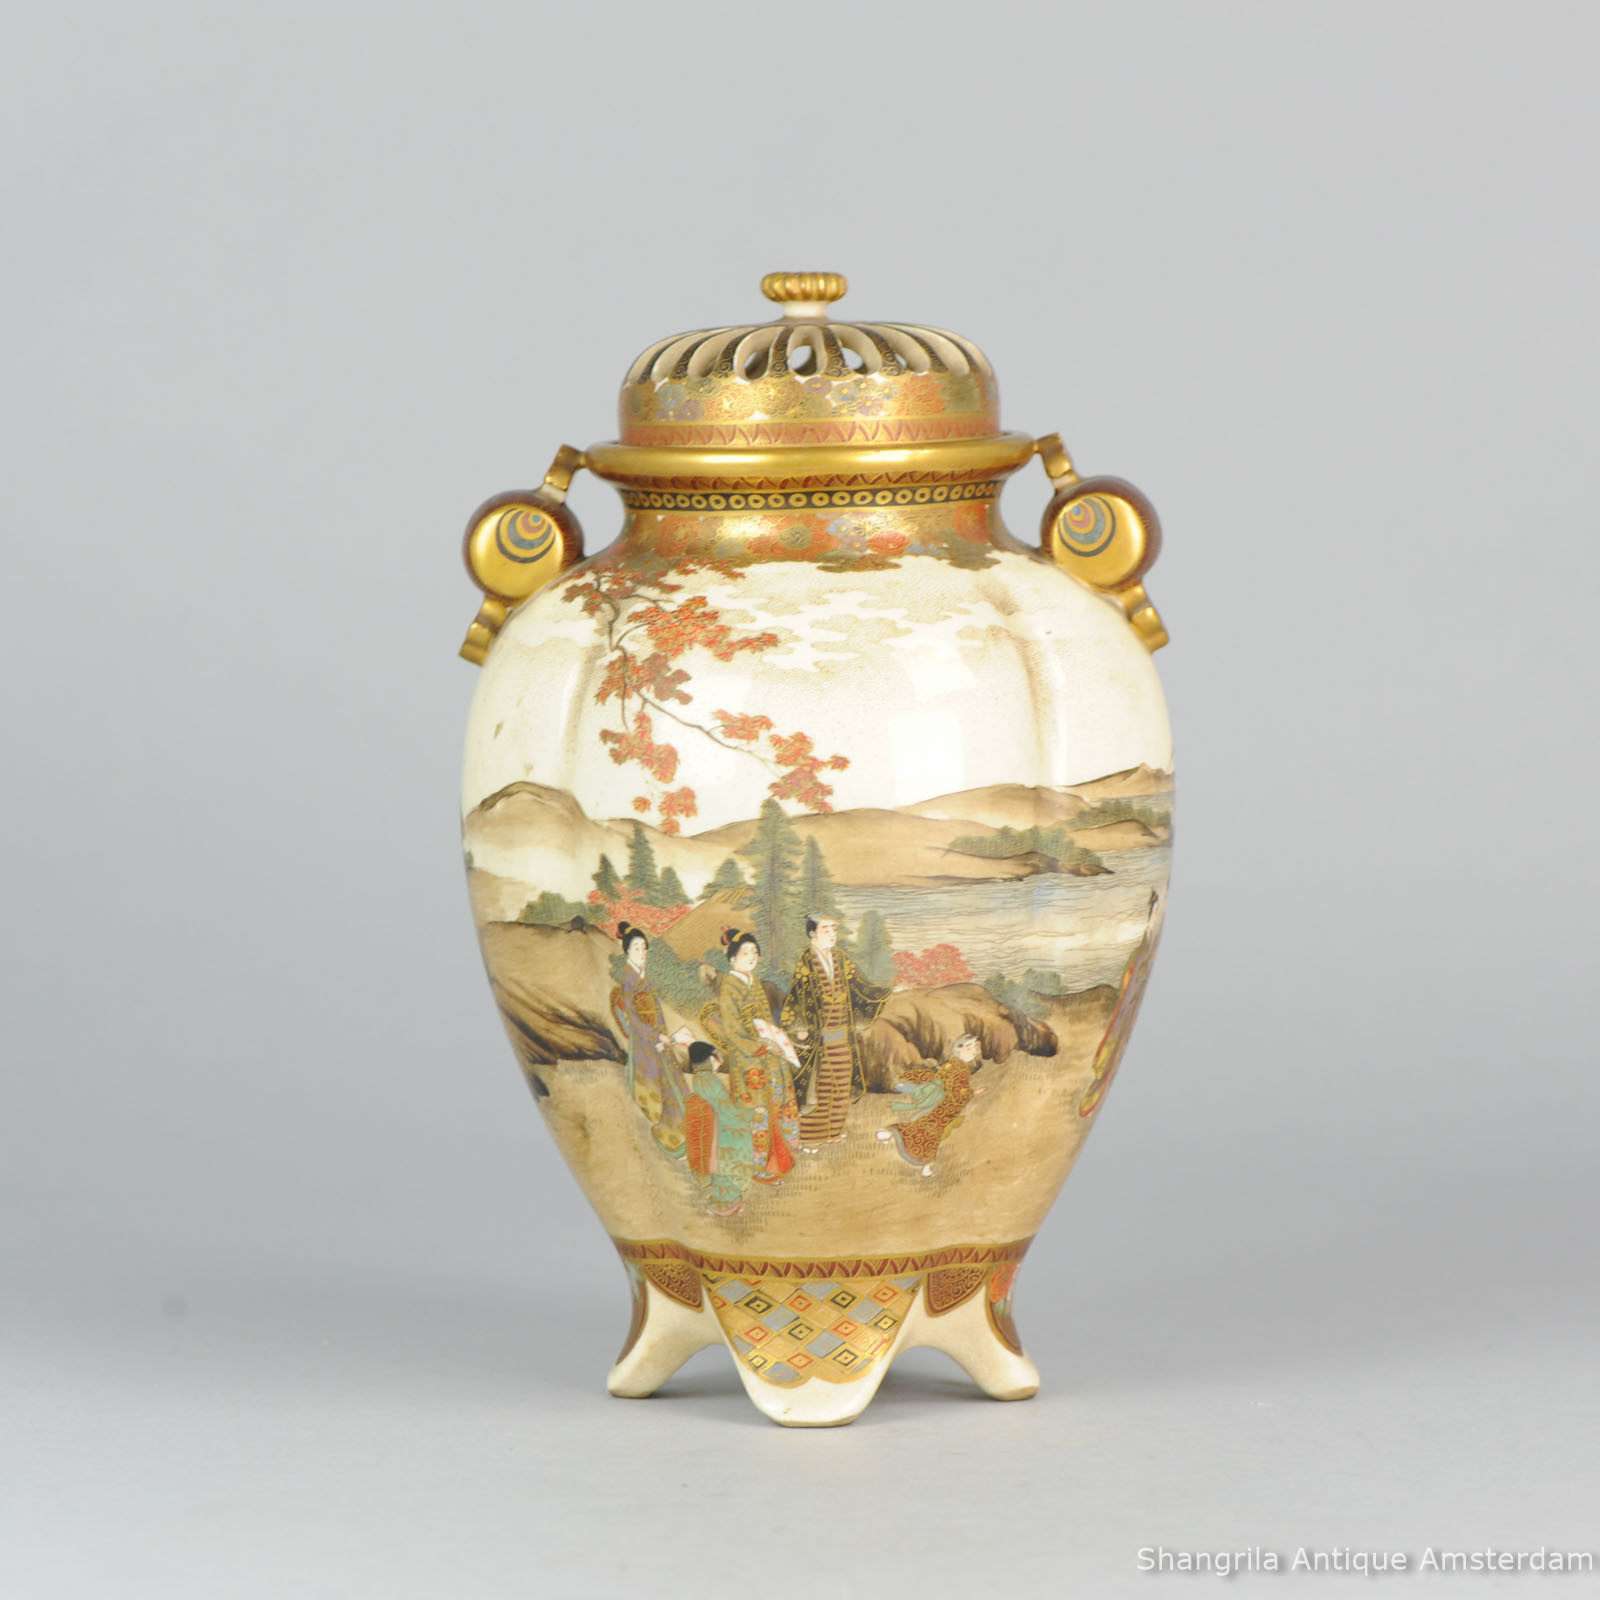 17 Amazing Satsuma Vase Ebay 2024 free download satsuma vase ebay of antique 19c japanese satsuma porcelain incense burner ebay with regard to shangrila antique